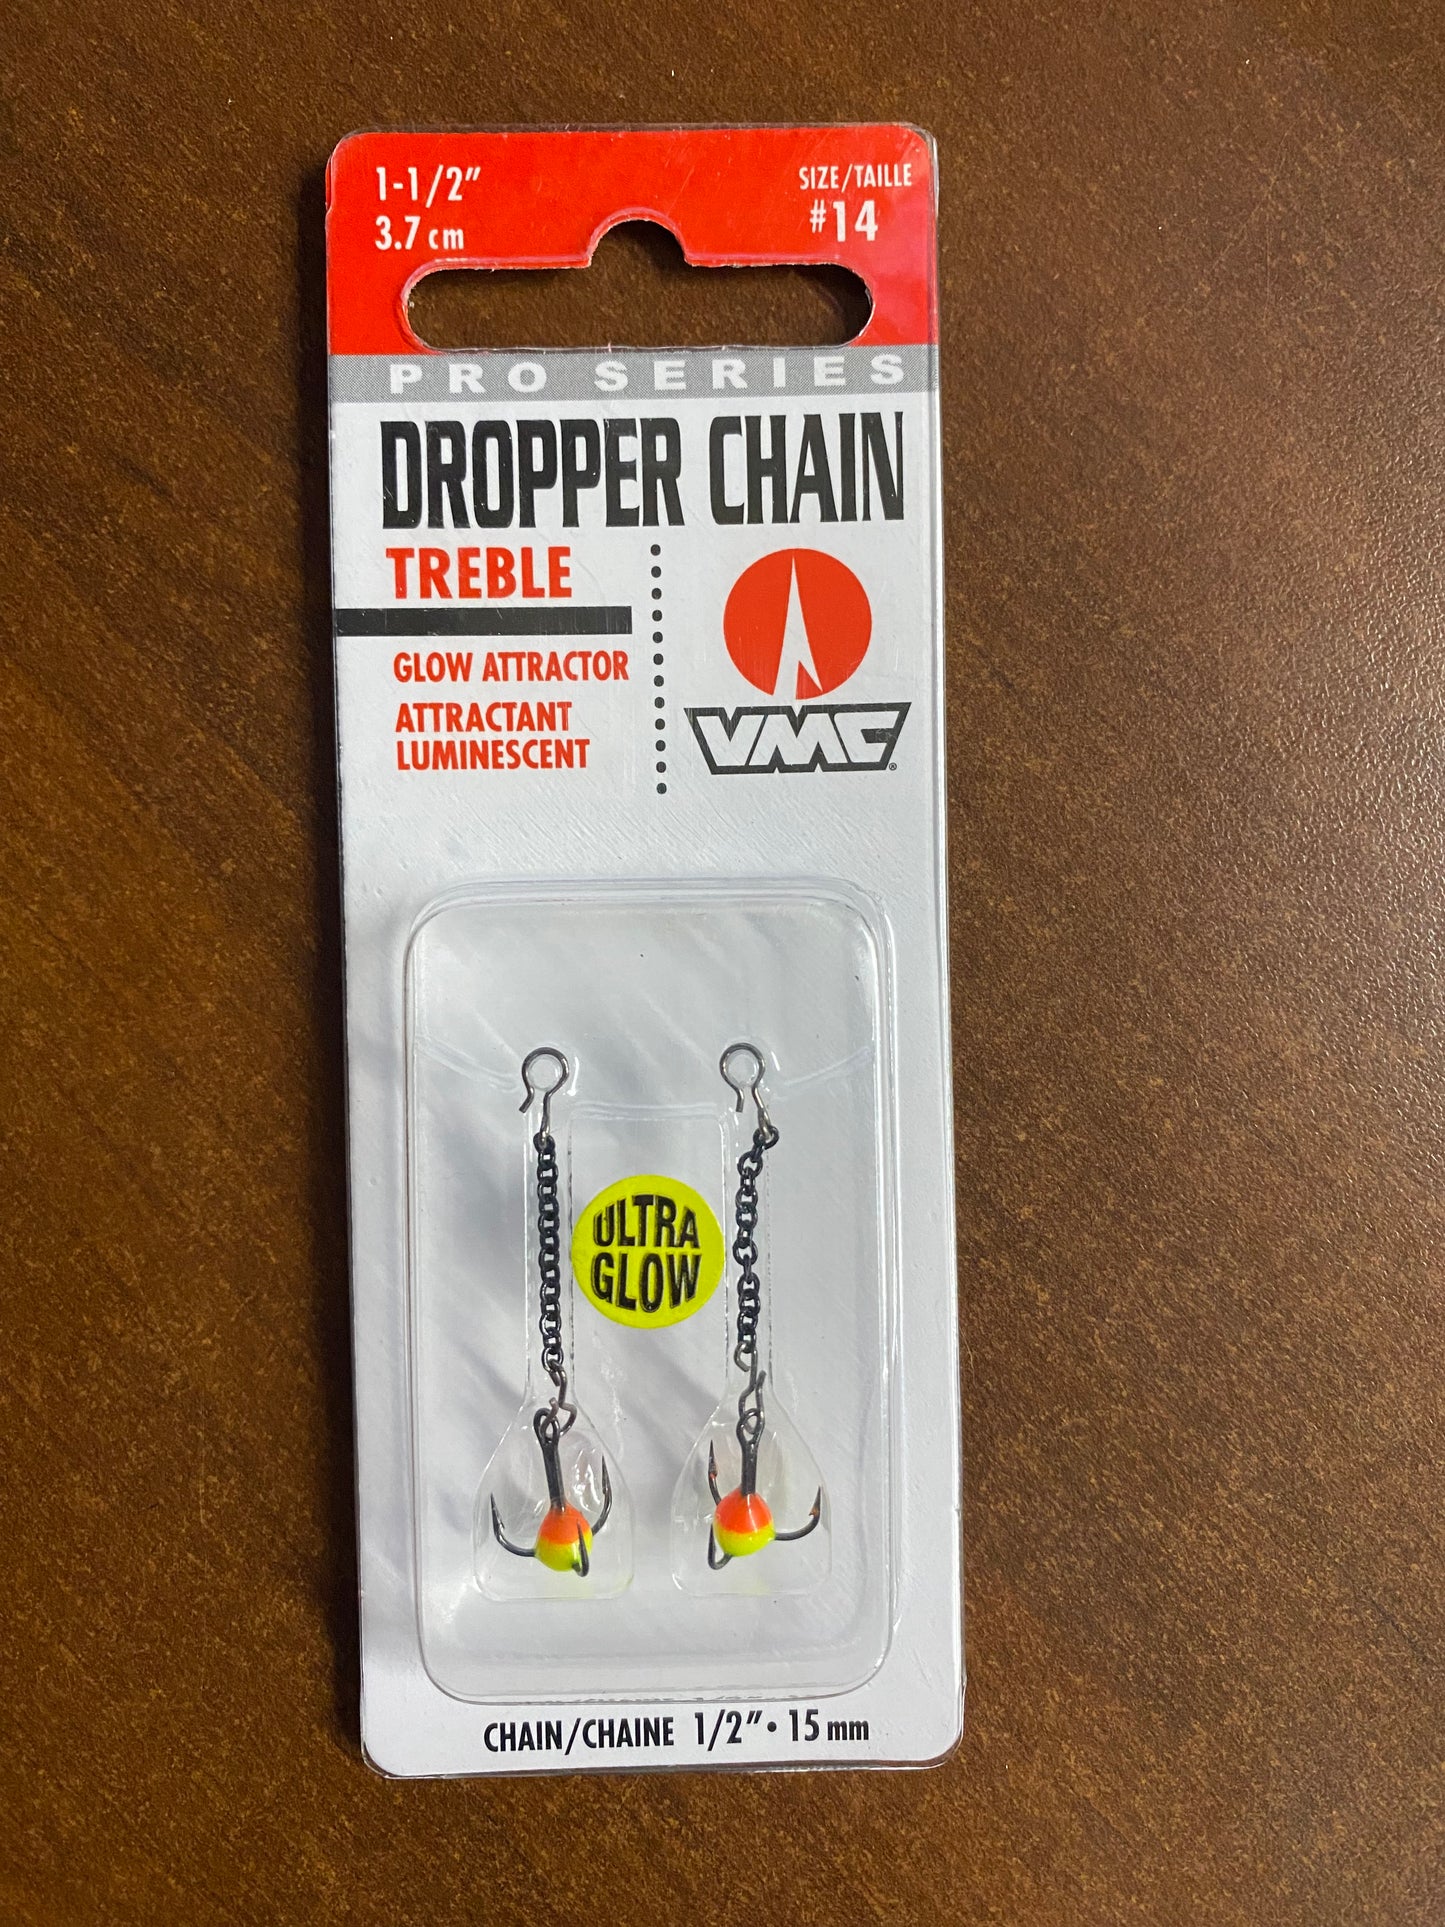 Pro Series Dropper Chain